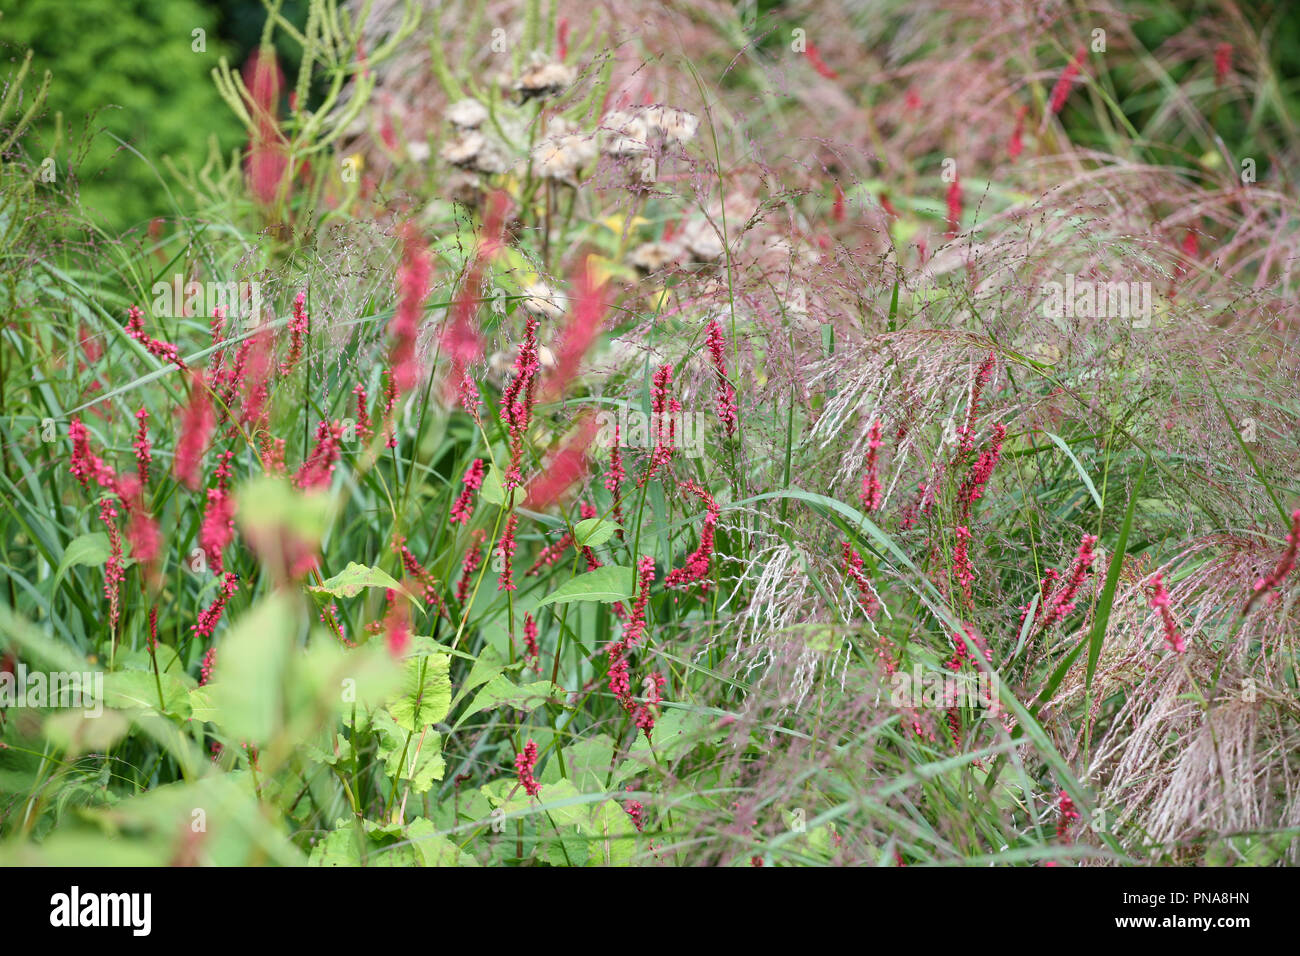 Persicaria amplexicaulis 'Firetail' Stock Photo